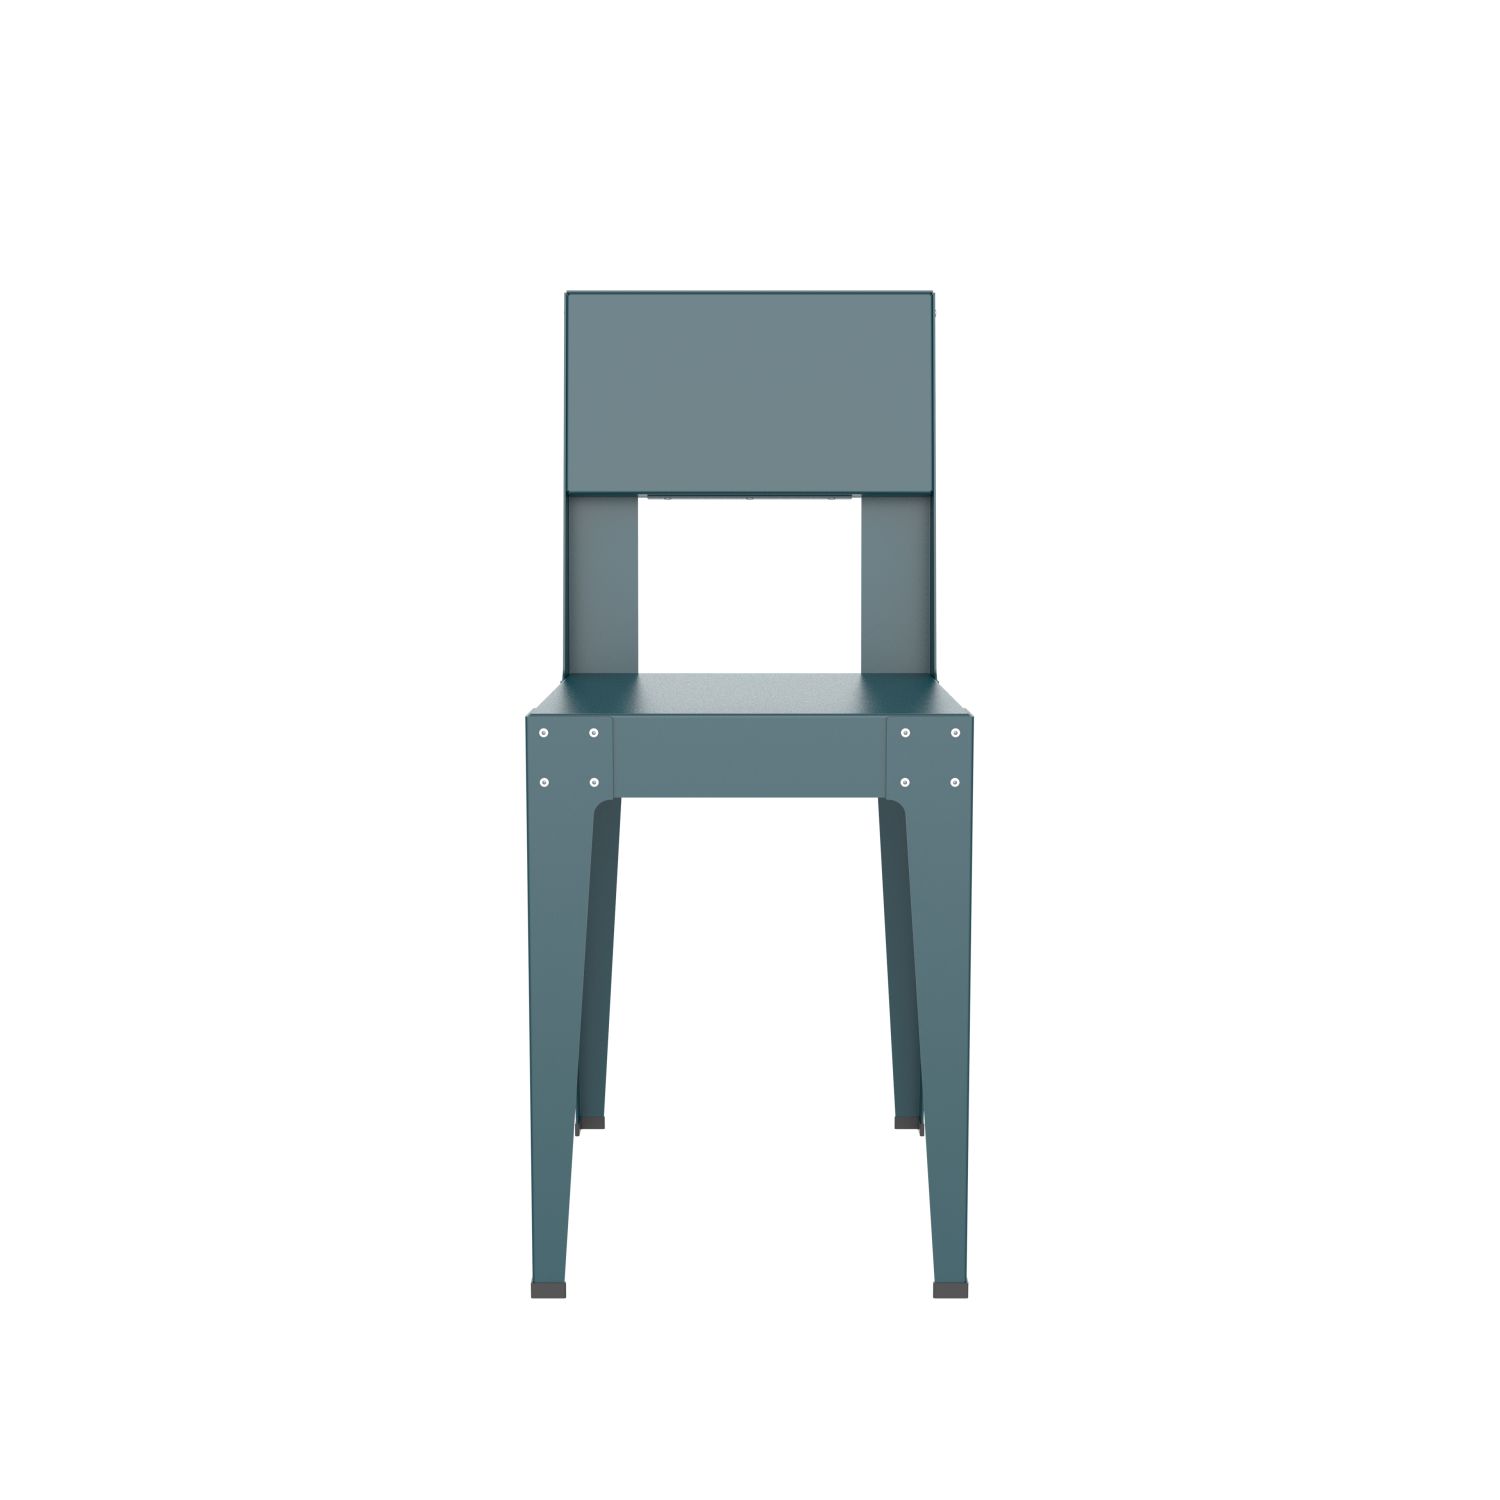 lensvelt piet hein eek aluminium series chair ocean blue ral5020 soft leg ends